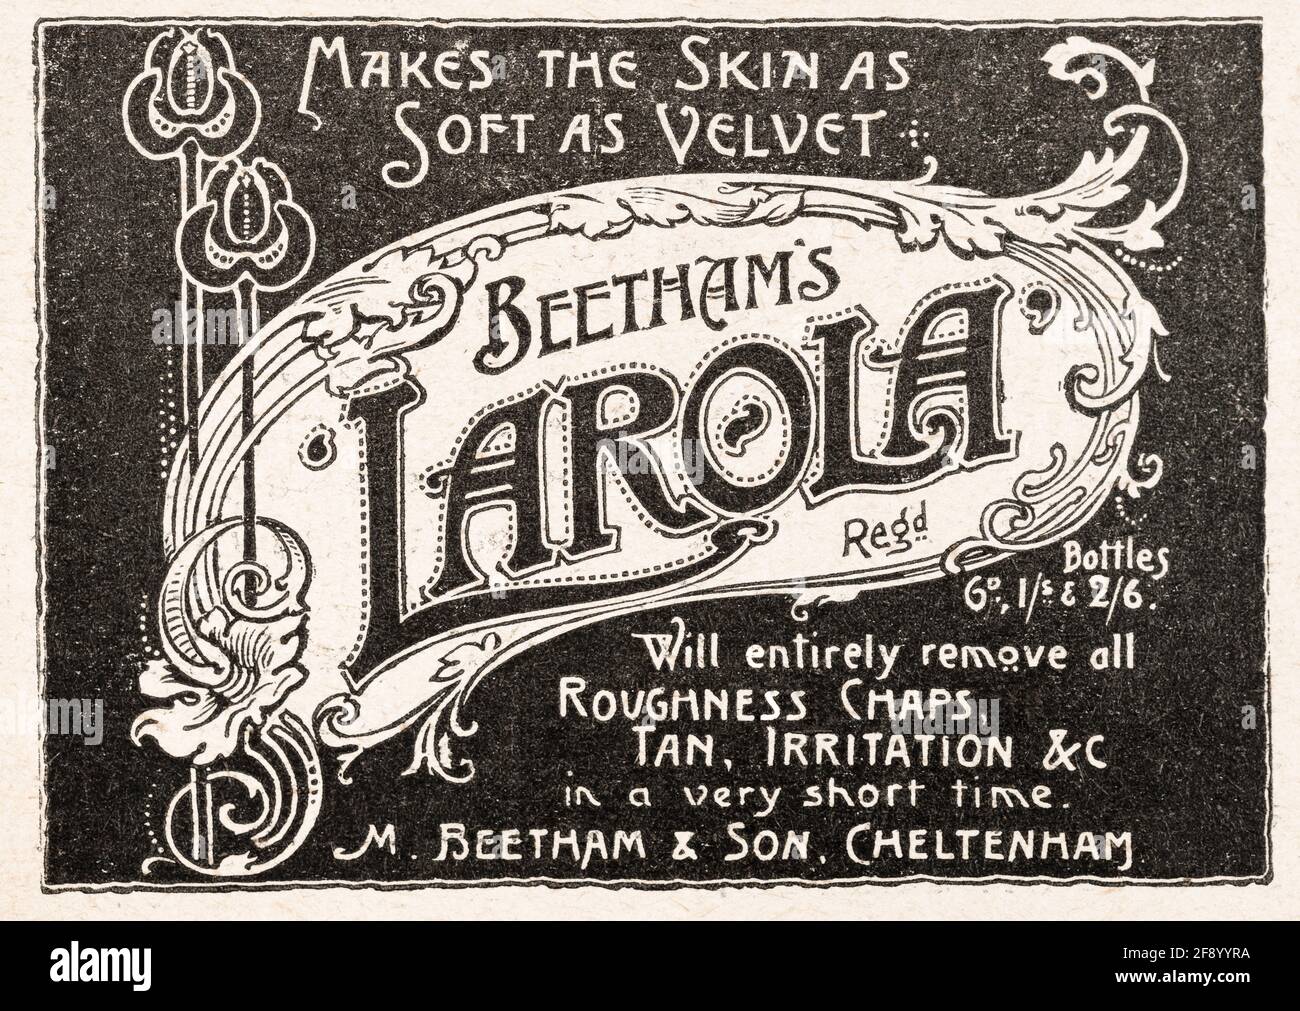 Werbung für alte viktorianische Hautpflege- und Schönheitsprodukte aus dem Jahr 1902 - Standards für die Vorwerbung. Alte Hautpflege-Werbung, Geschichte der Werbung. Stockfoto